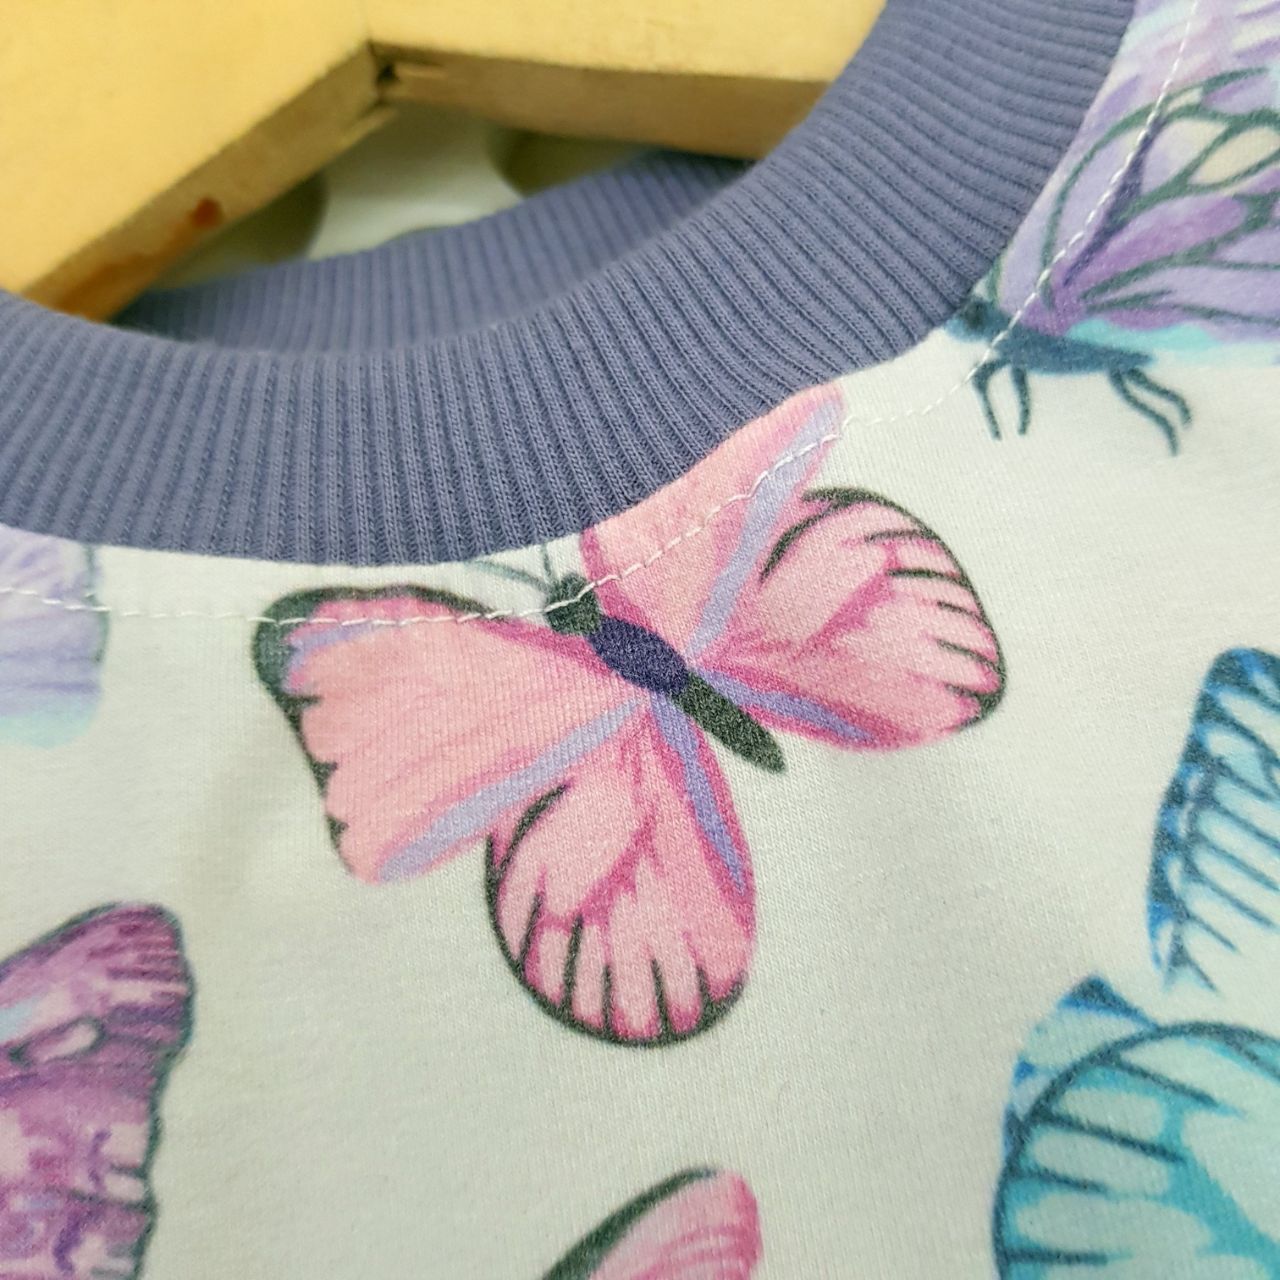 عکس بلوز شلوار پروانه های زیبا - شماره 4